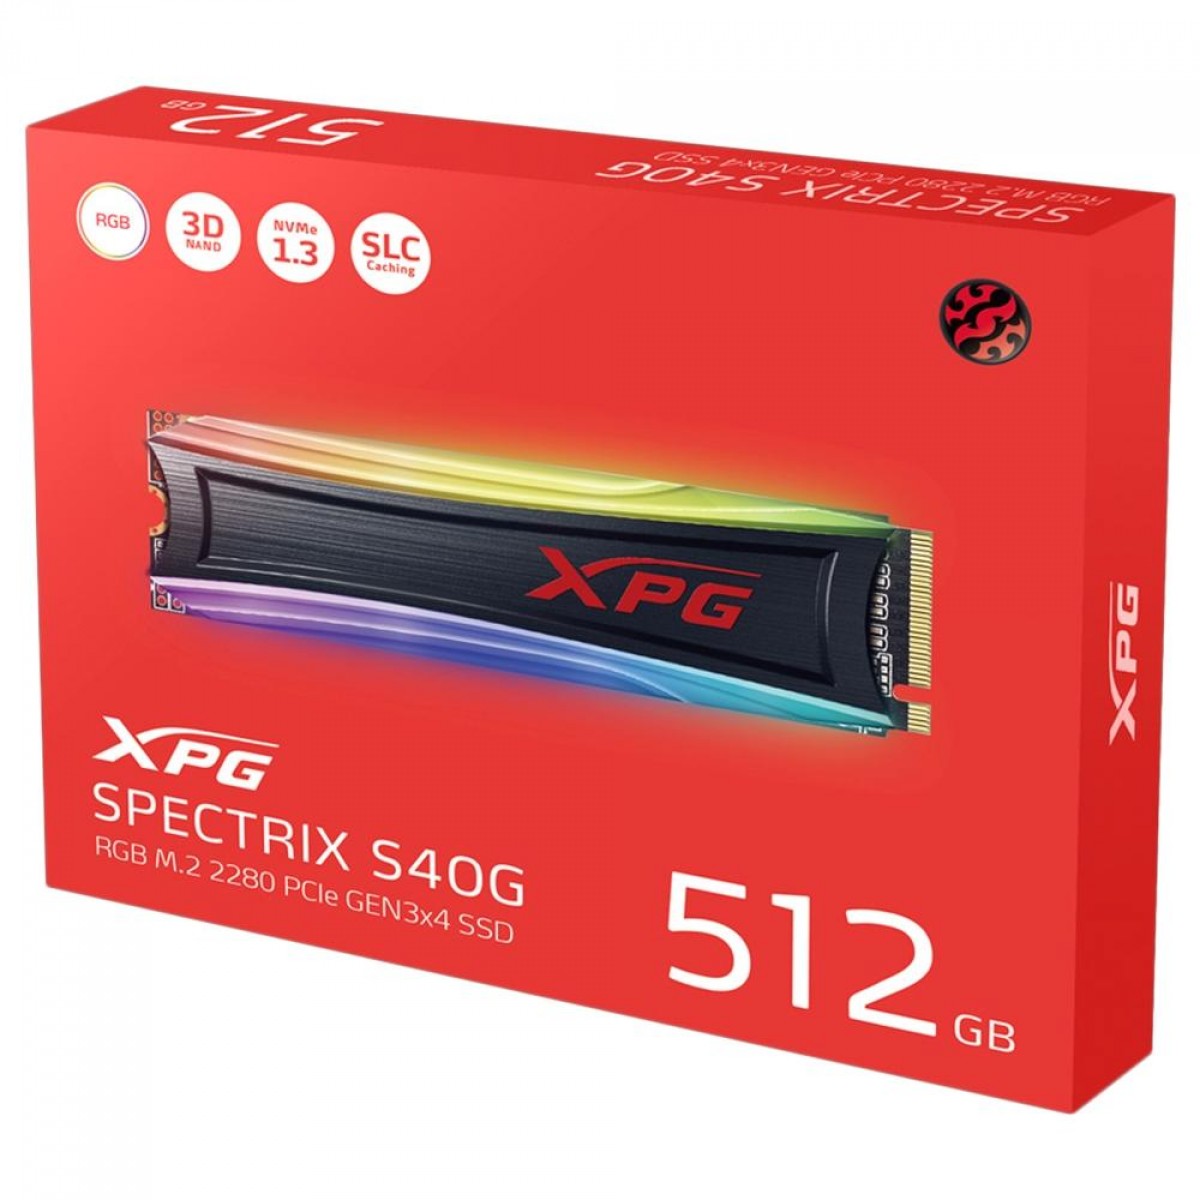 SSD XPG Spectrix S40G RGB, 512GB, M.2 2280, NVMe, Leitura: 3500MBs e Gravação: 1900MBs, AS40G-512GT-C